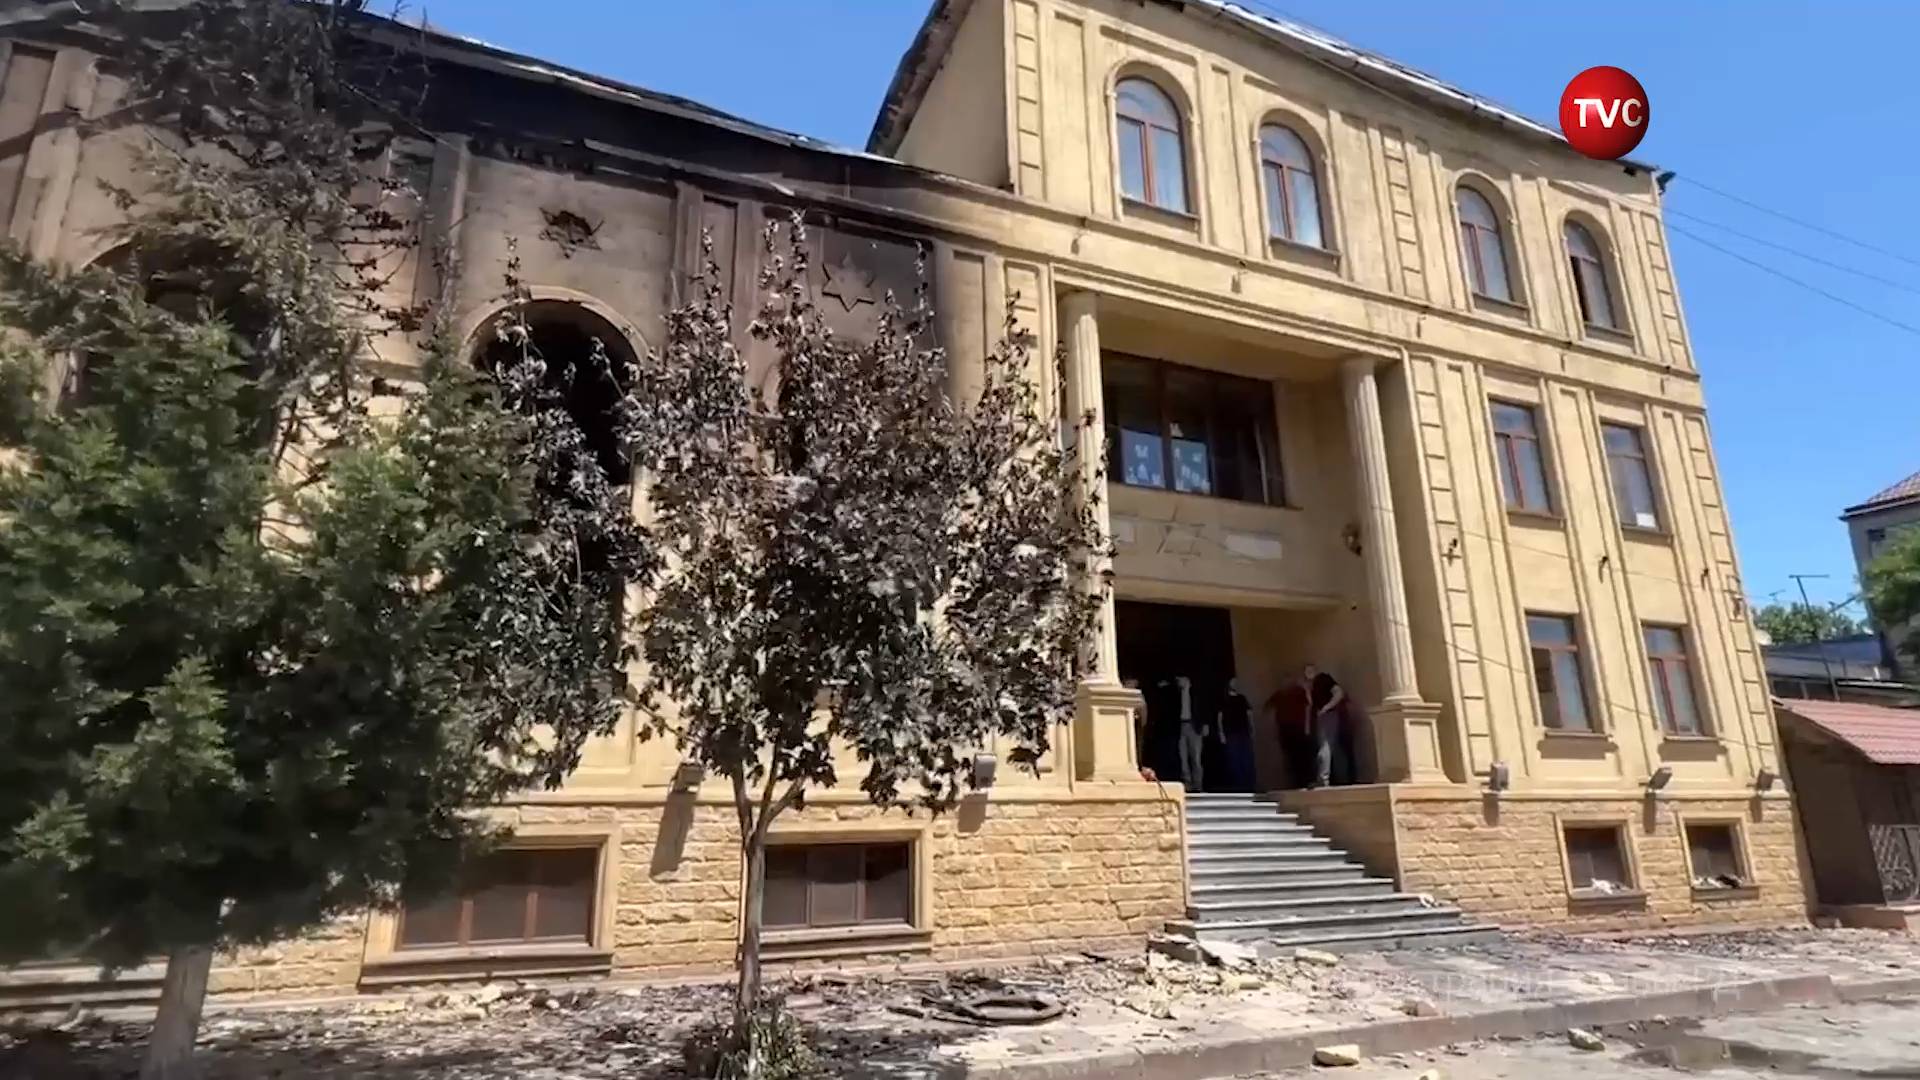 Опубликованы кадры изнутри сожженной в Дербенте синагоги / События на ТВЦ